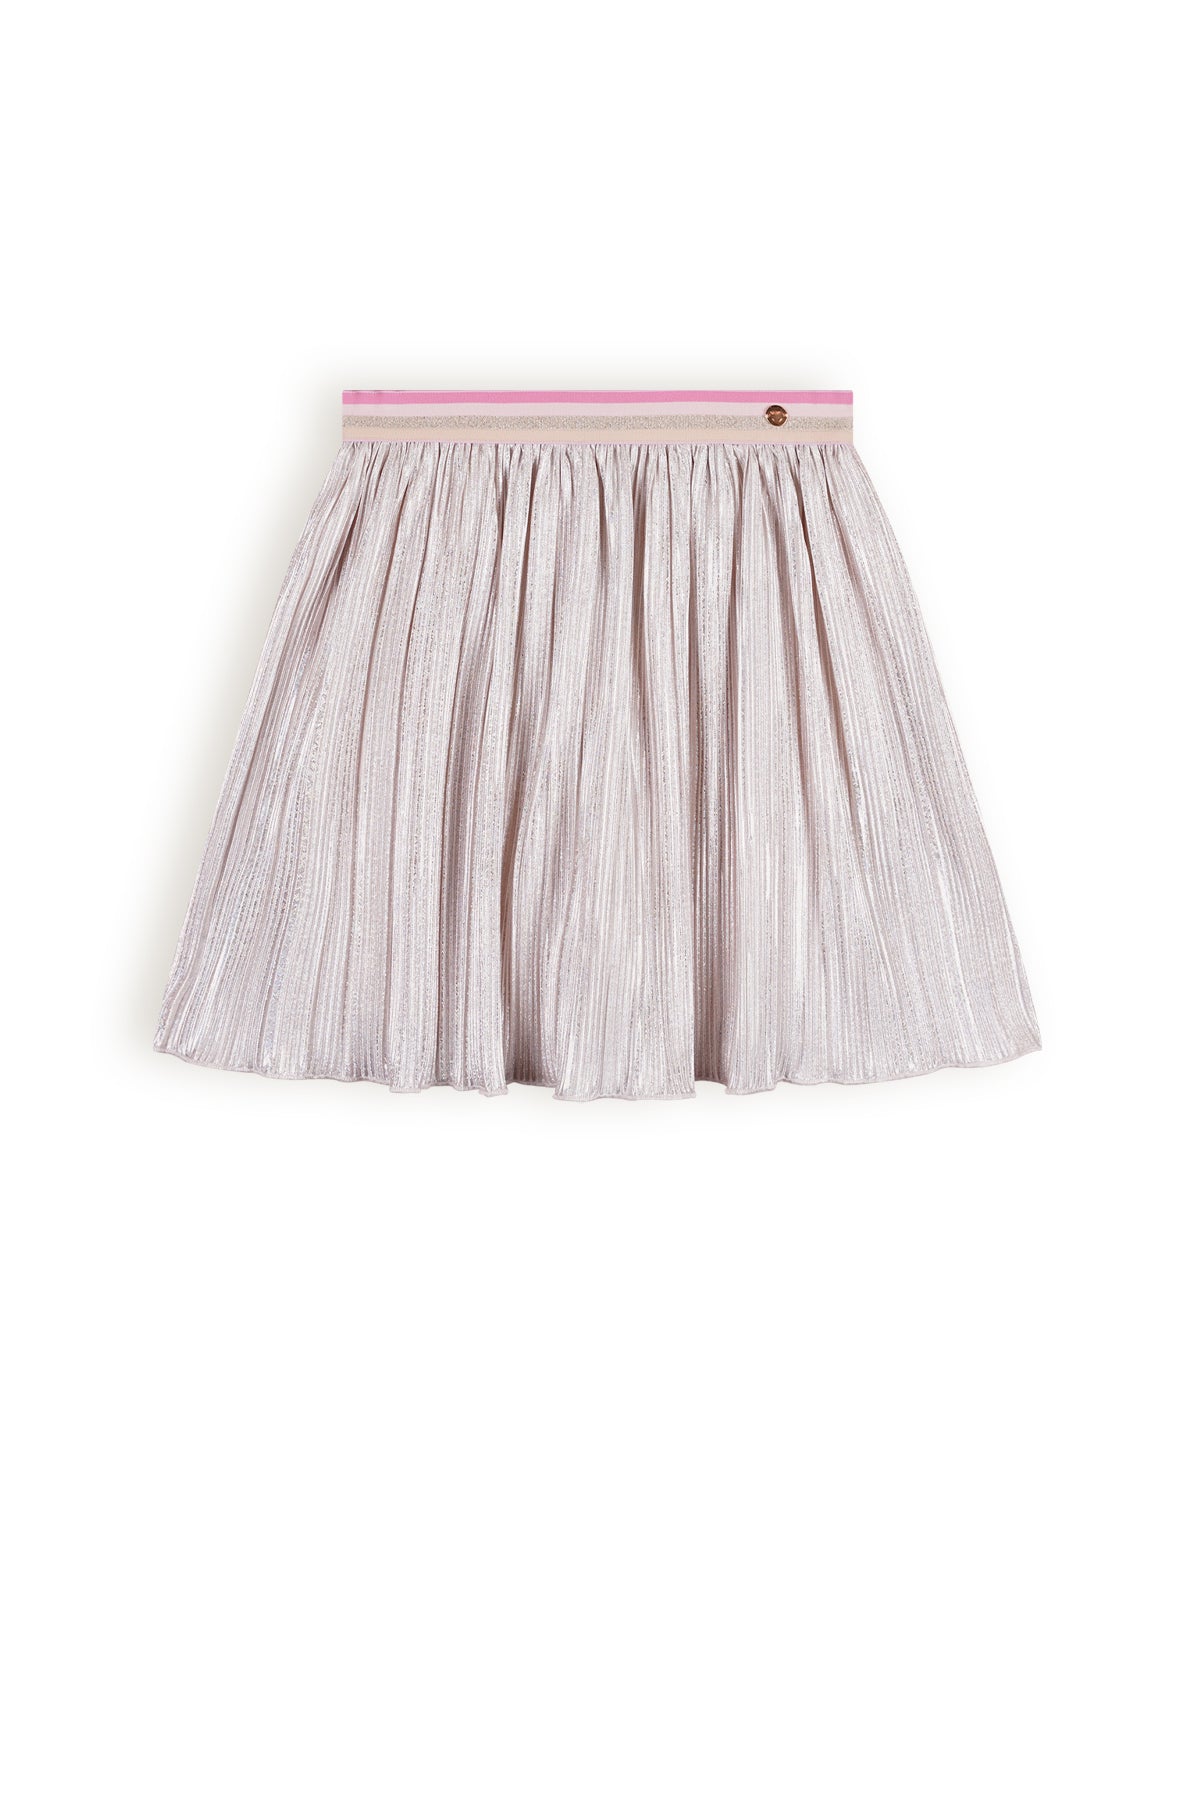 NoNo Nikki Pearl Plisse Skirt